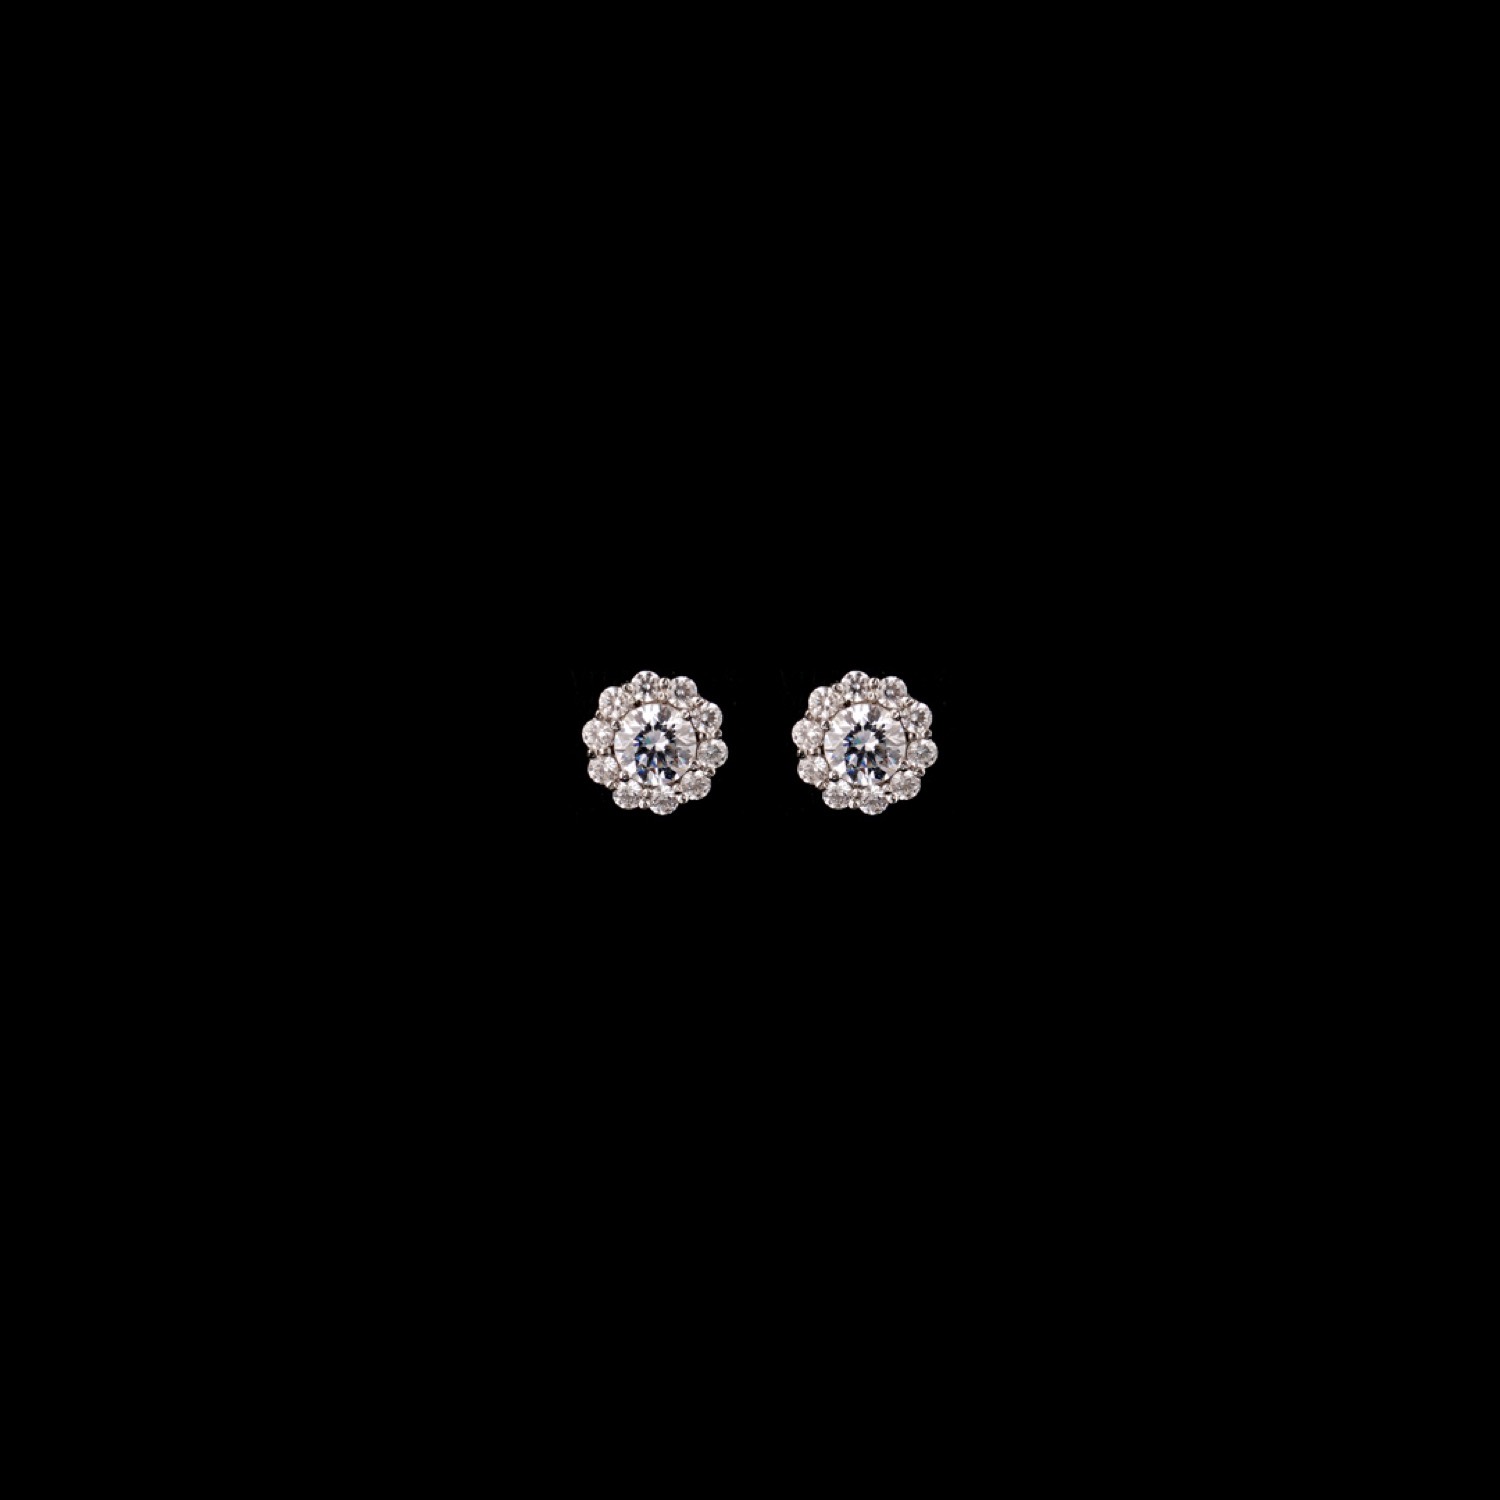 varam_earrings_102022_round_cut_white_stone_flower_shaped_studded_silver_earrings_2-1